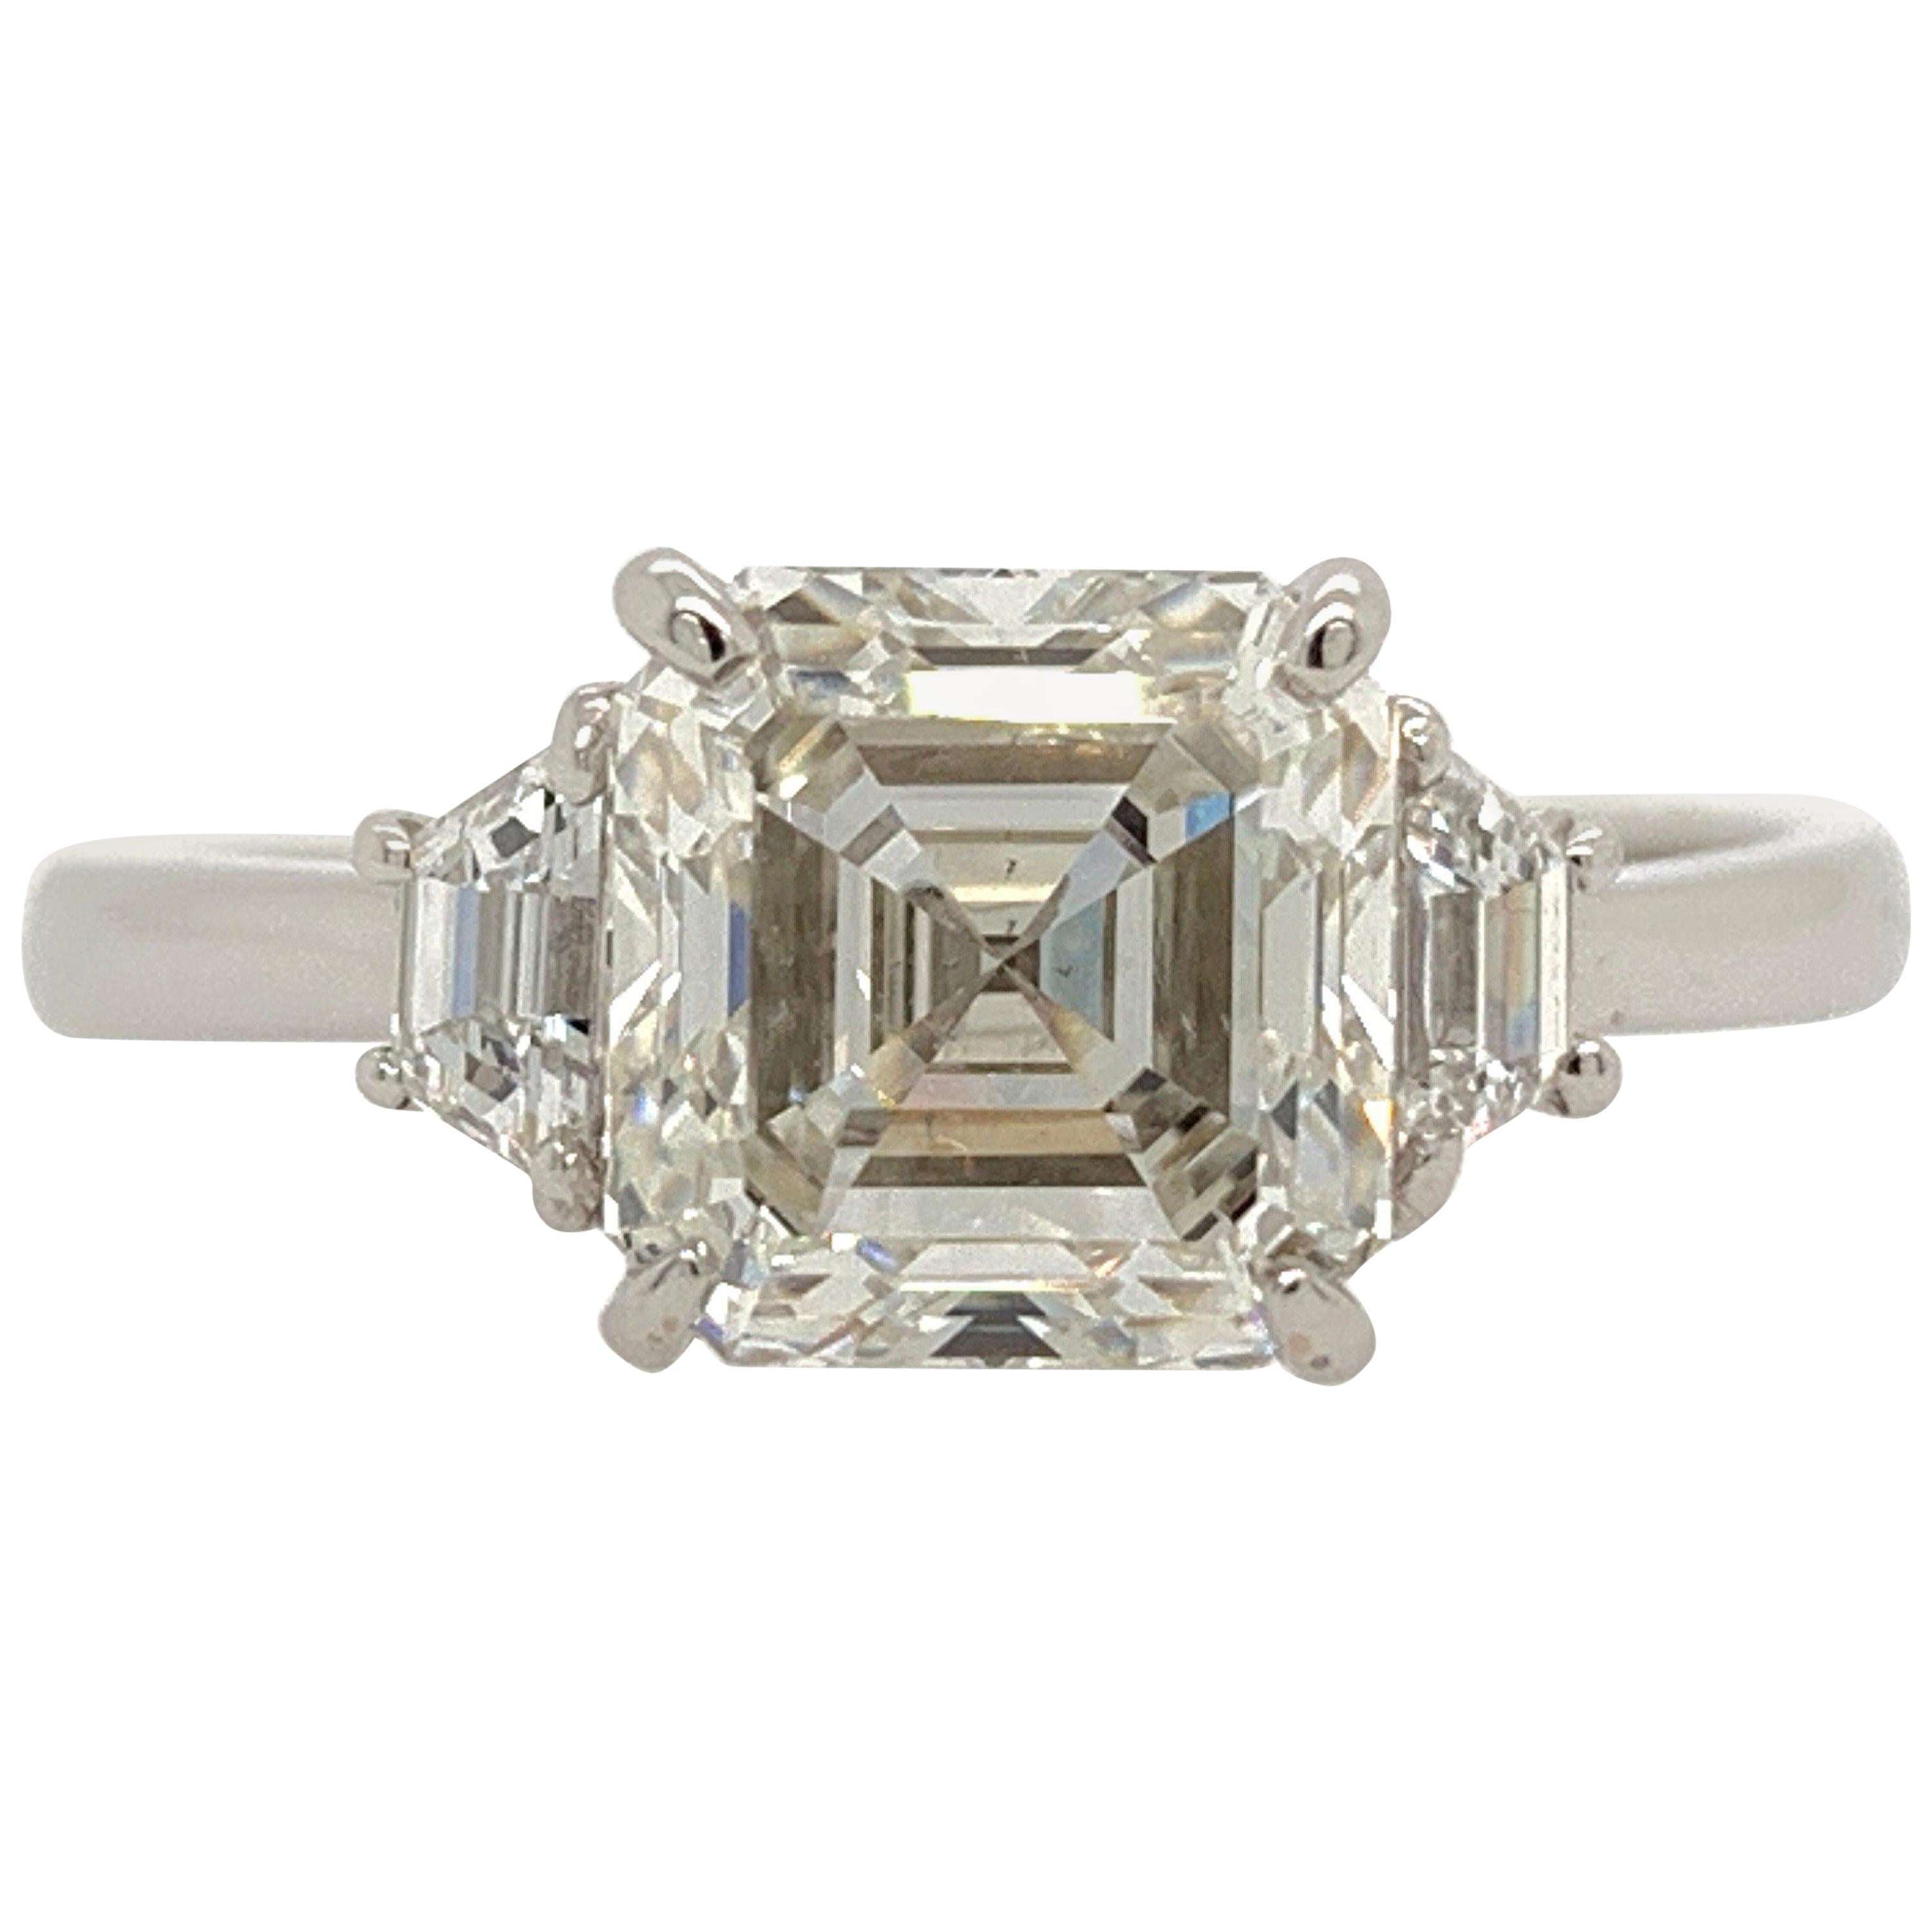  Square Emerald Cut Diamond Ring GIA 2.11 Carat I VS2 